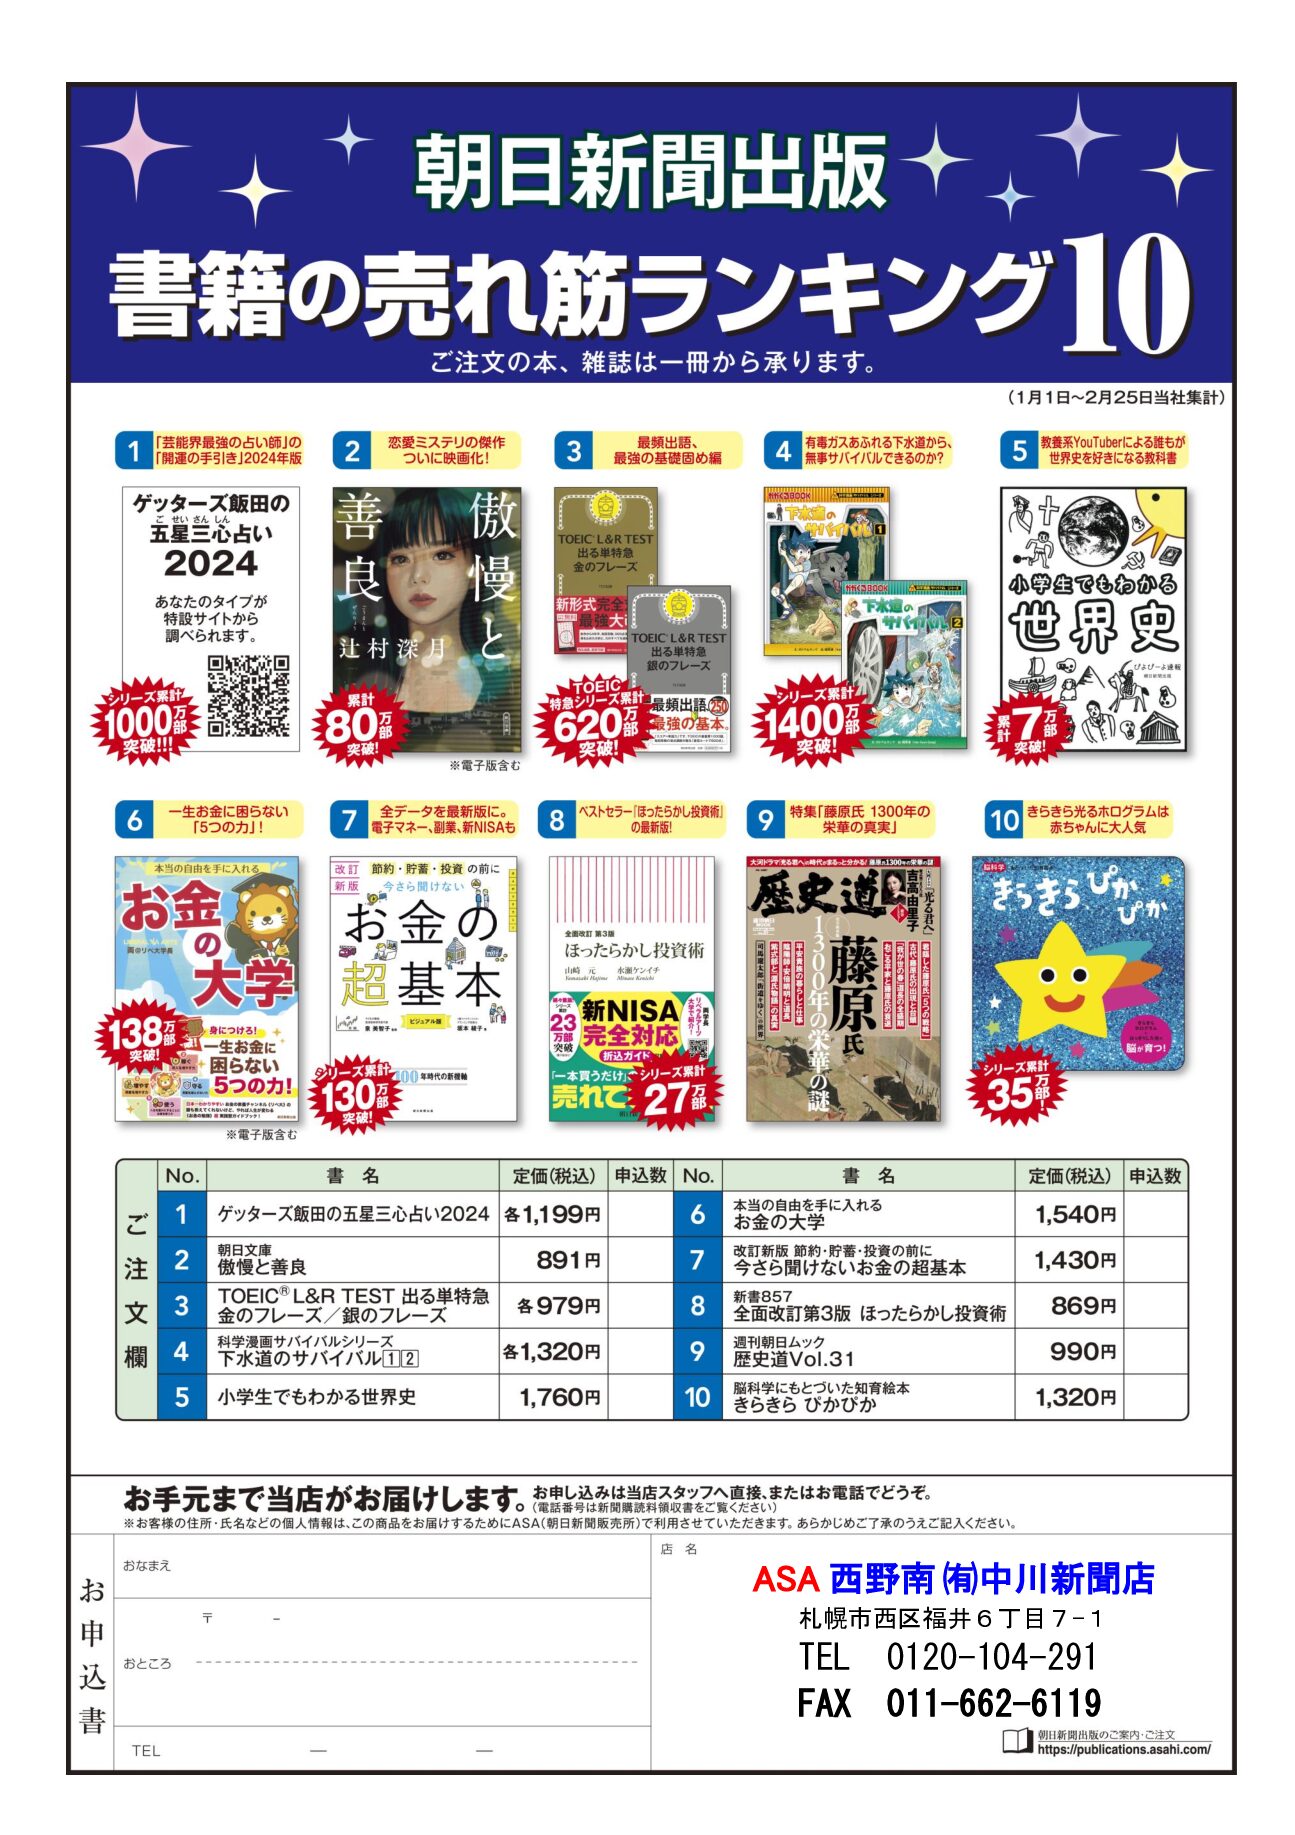 朝日新聞出版 書箱の売れ筋ランキング10 3月image